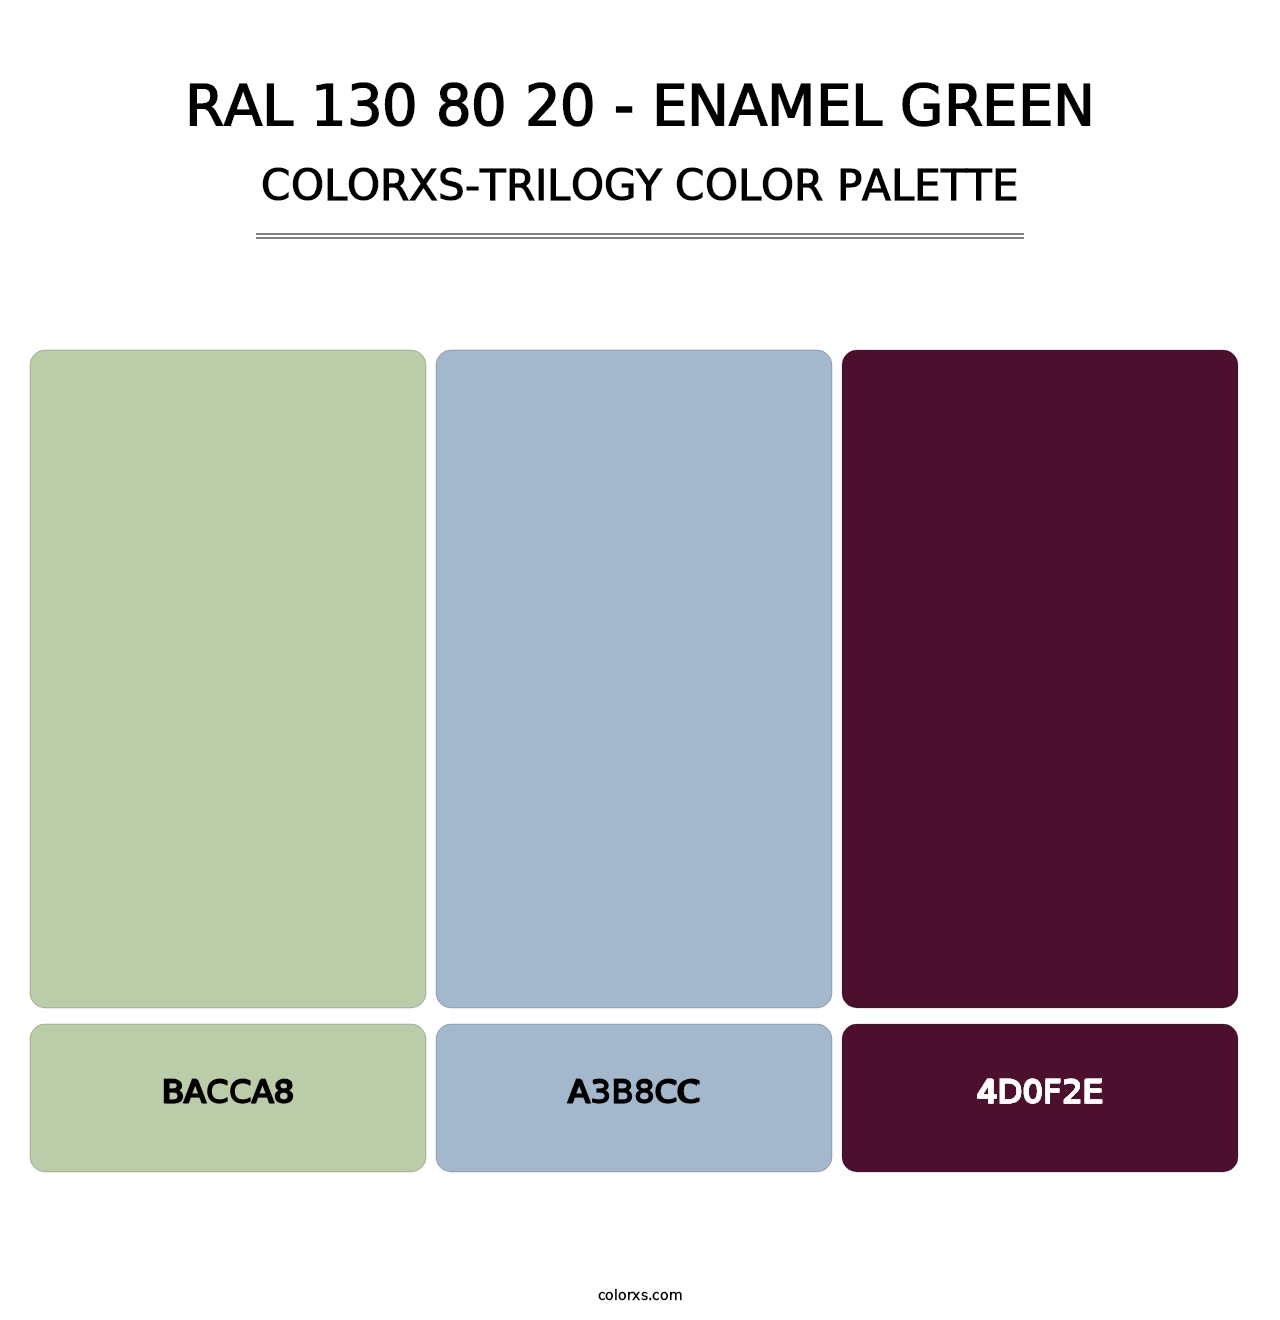 RAL 130 80 20 - Enamel Green - Colorxs Trilogy Palette